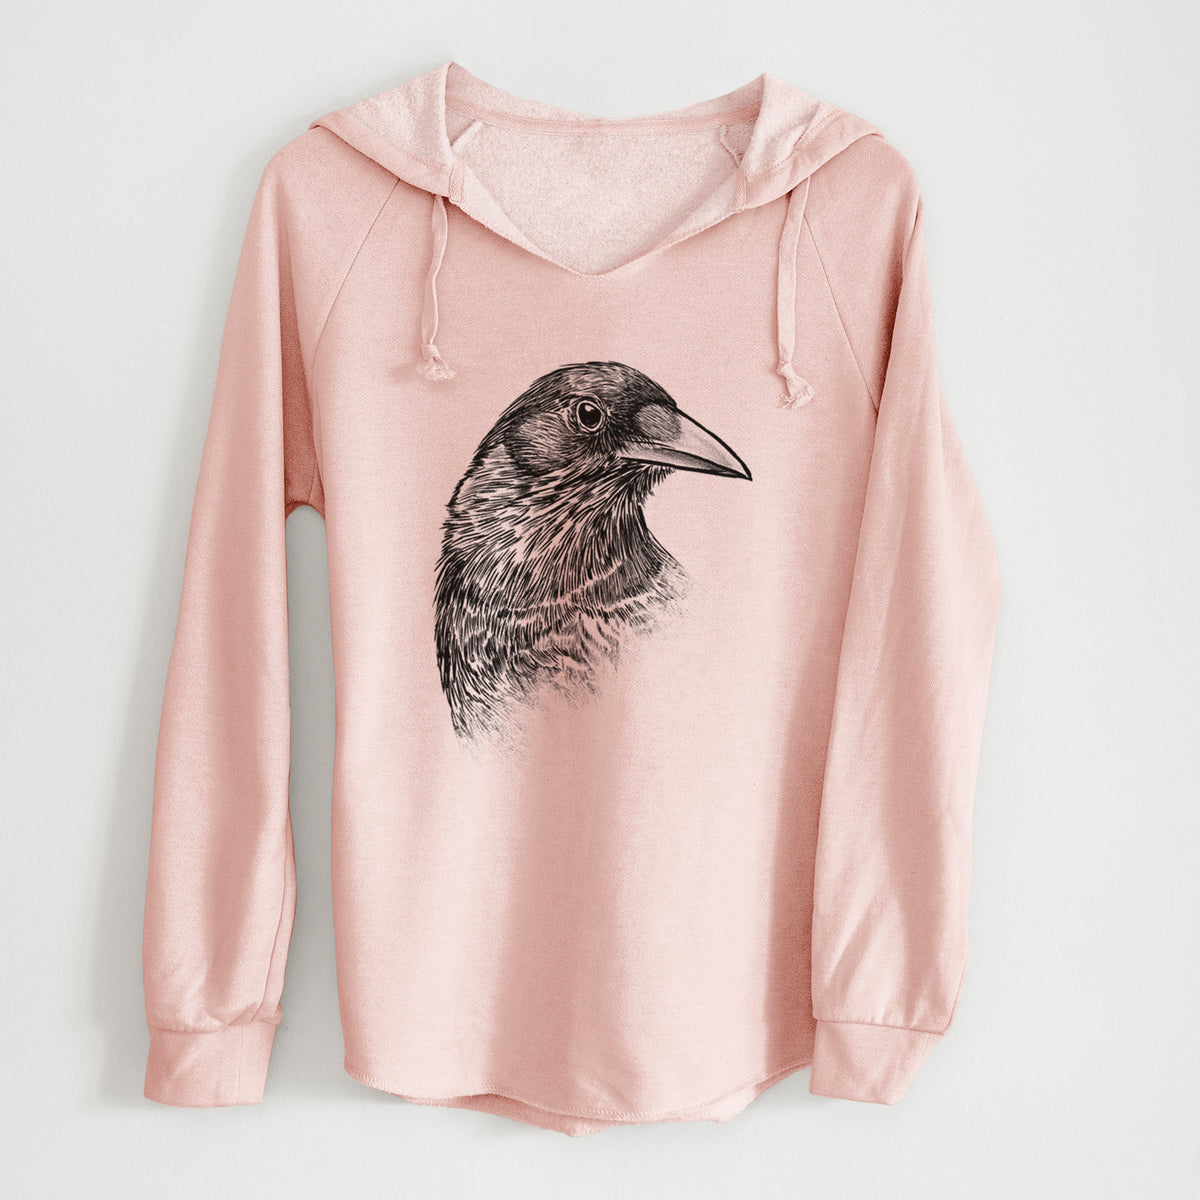 American Crow Bust - Corvus brachyrhynchos - Cali Wave Hooded Sweatshirt